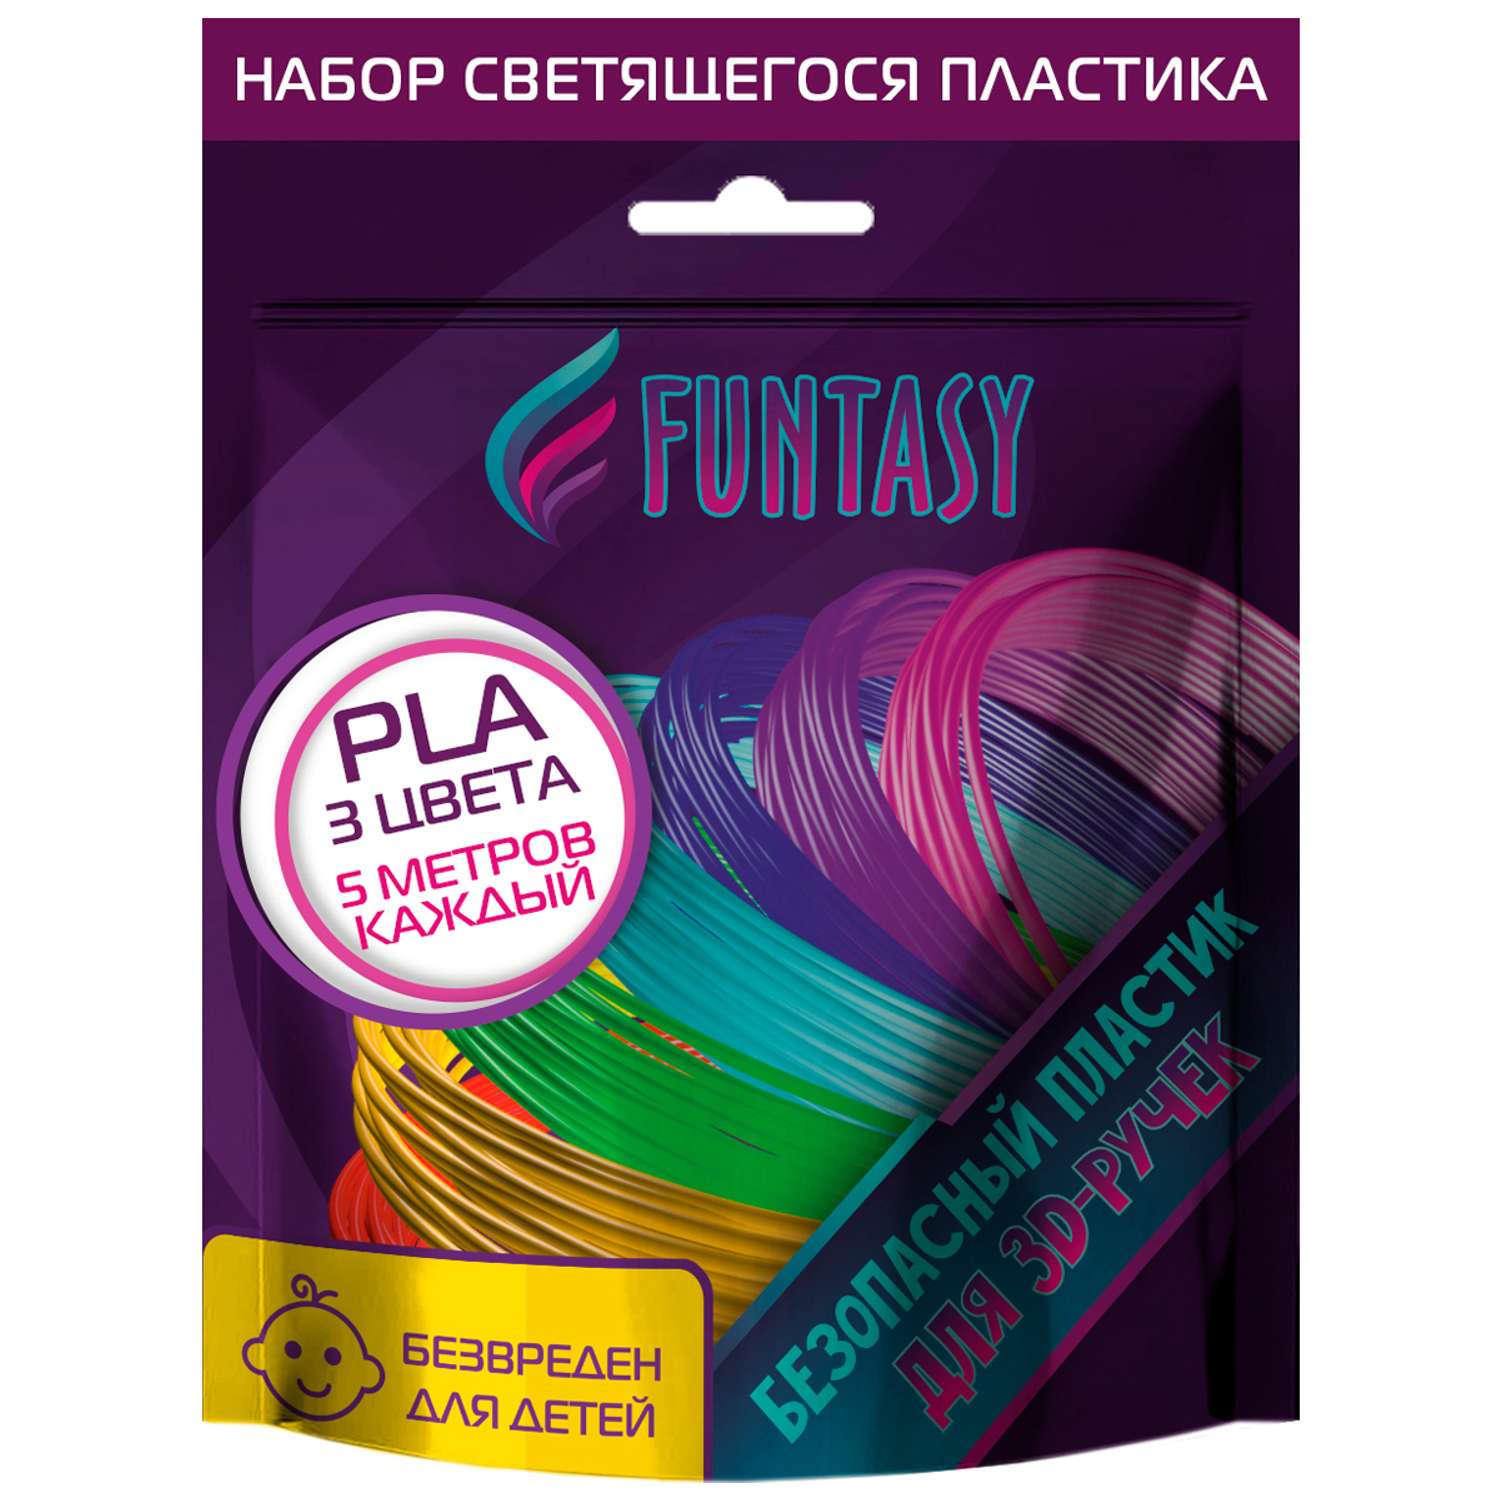 Набор светящегося PLA-пластика Funtasy 3 цвета по 5 метров - фото 9